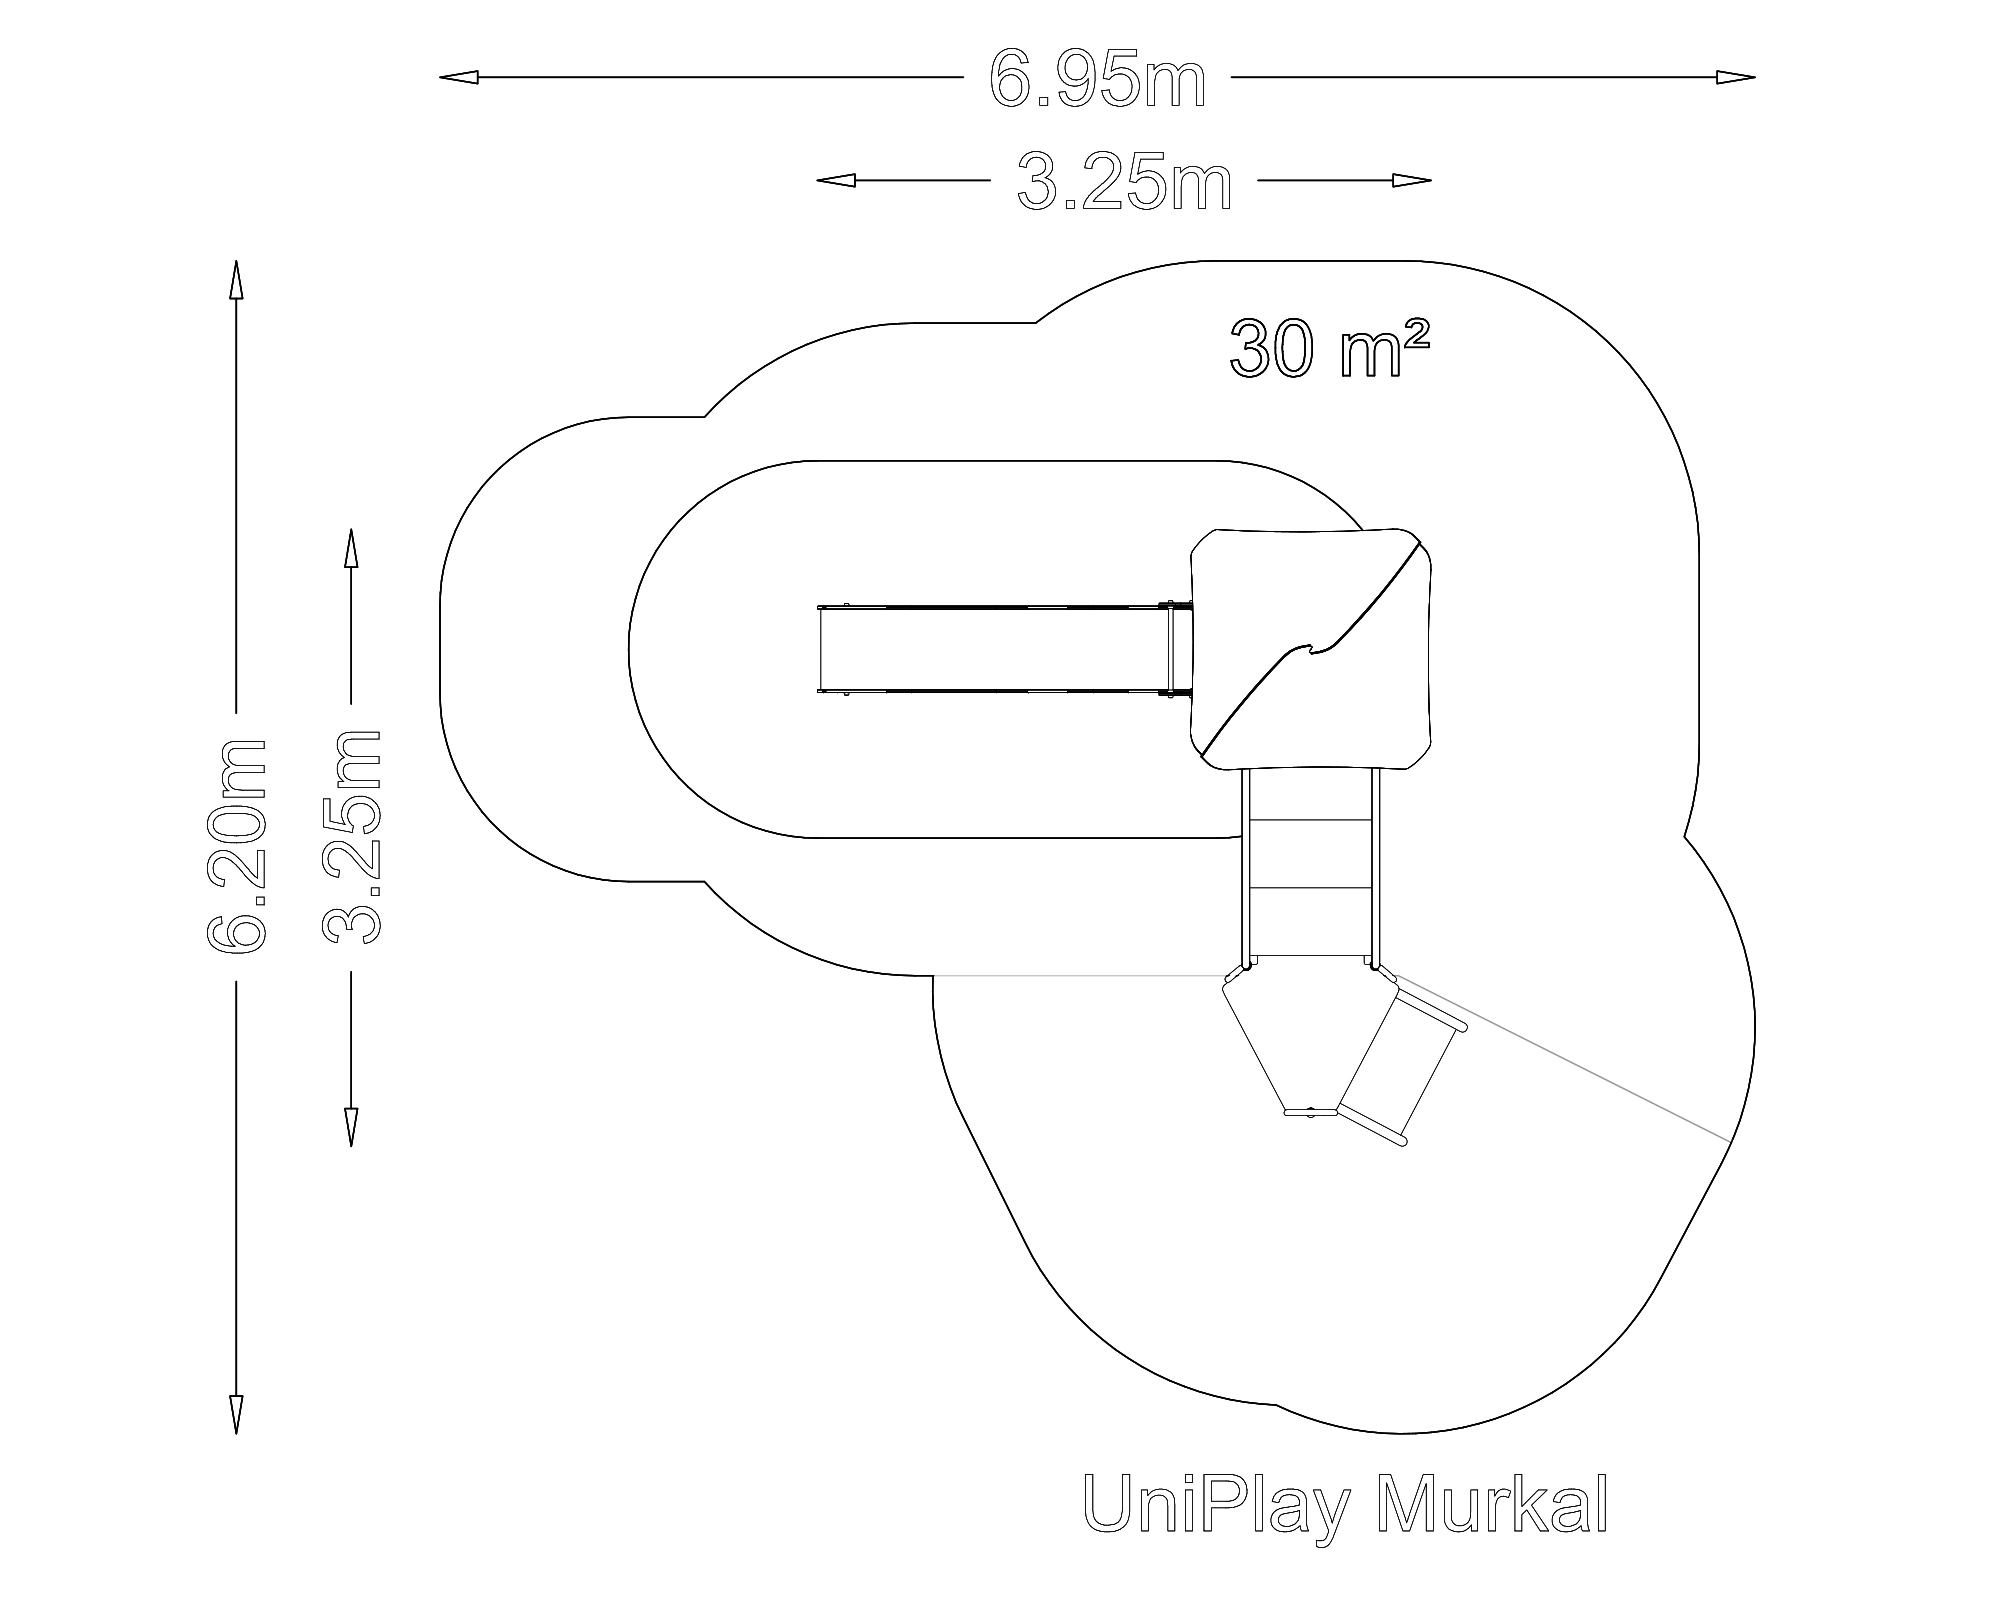 UniPlay Murkal